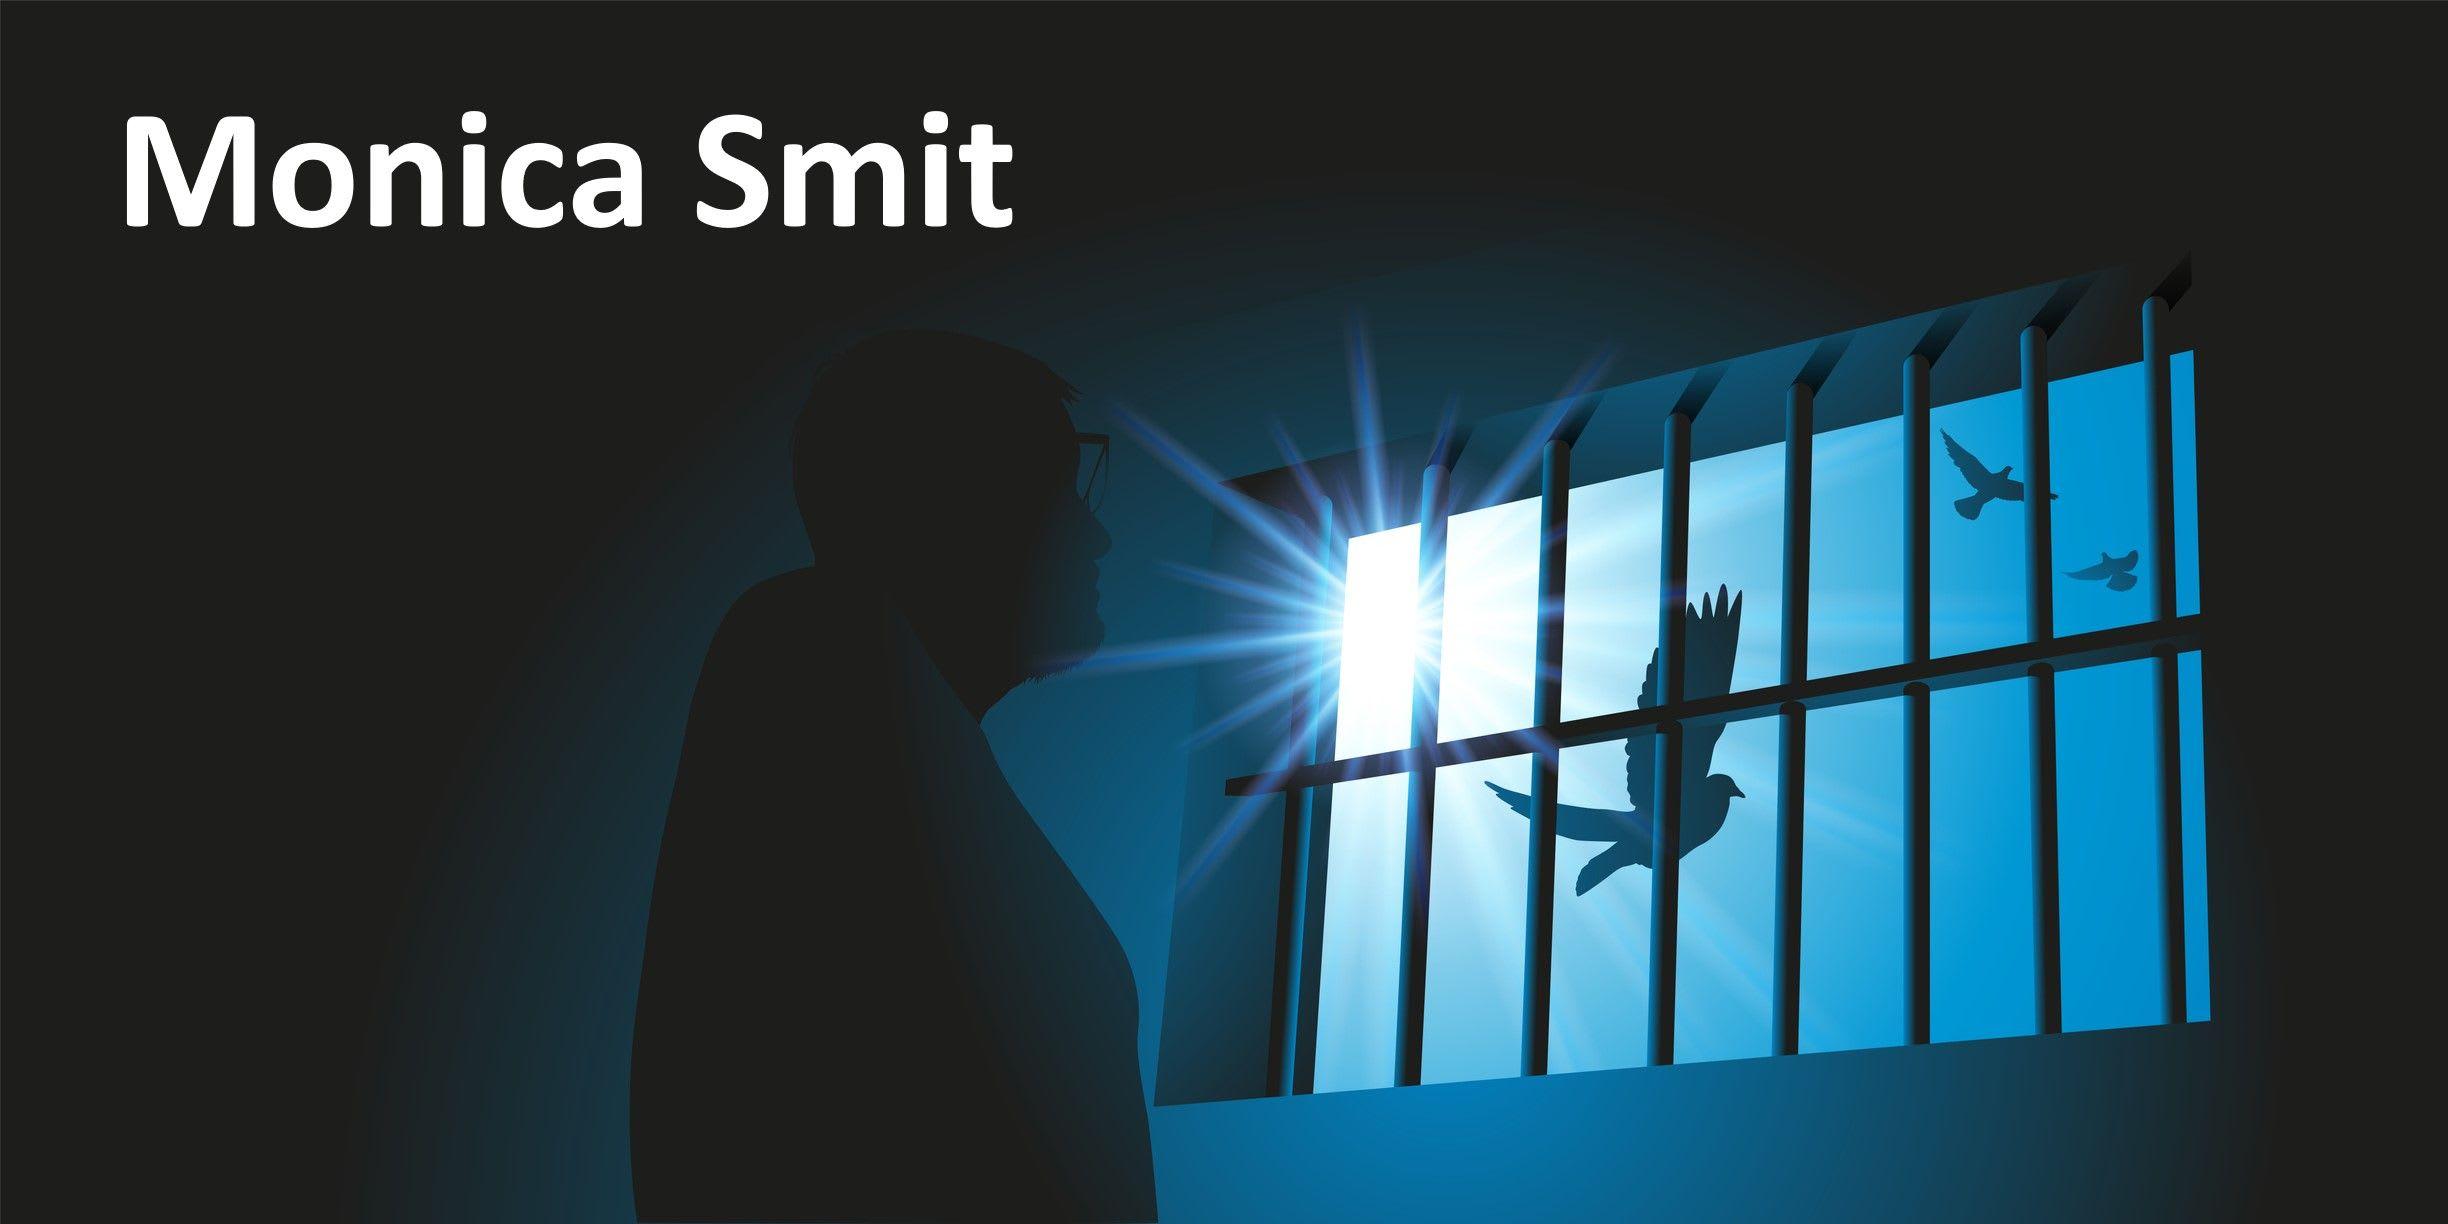 Vindication for jailed Australian freedom fighter Monica Smit